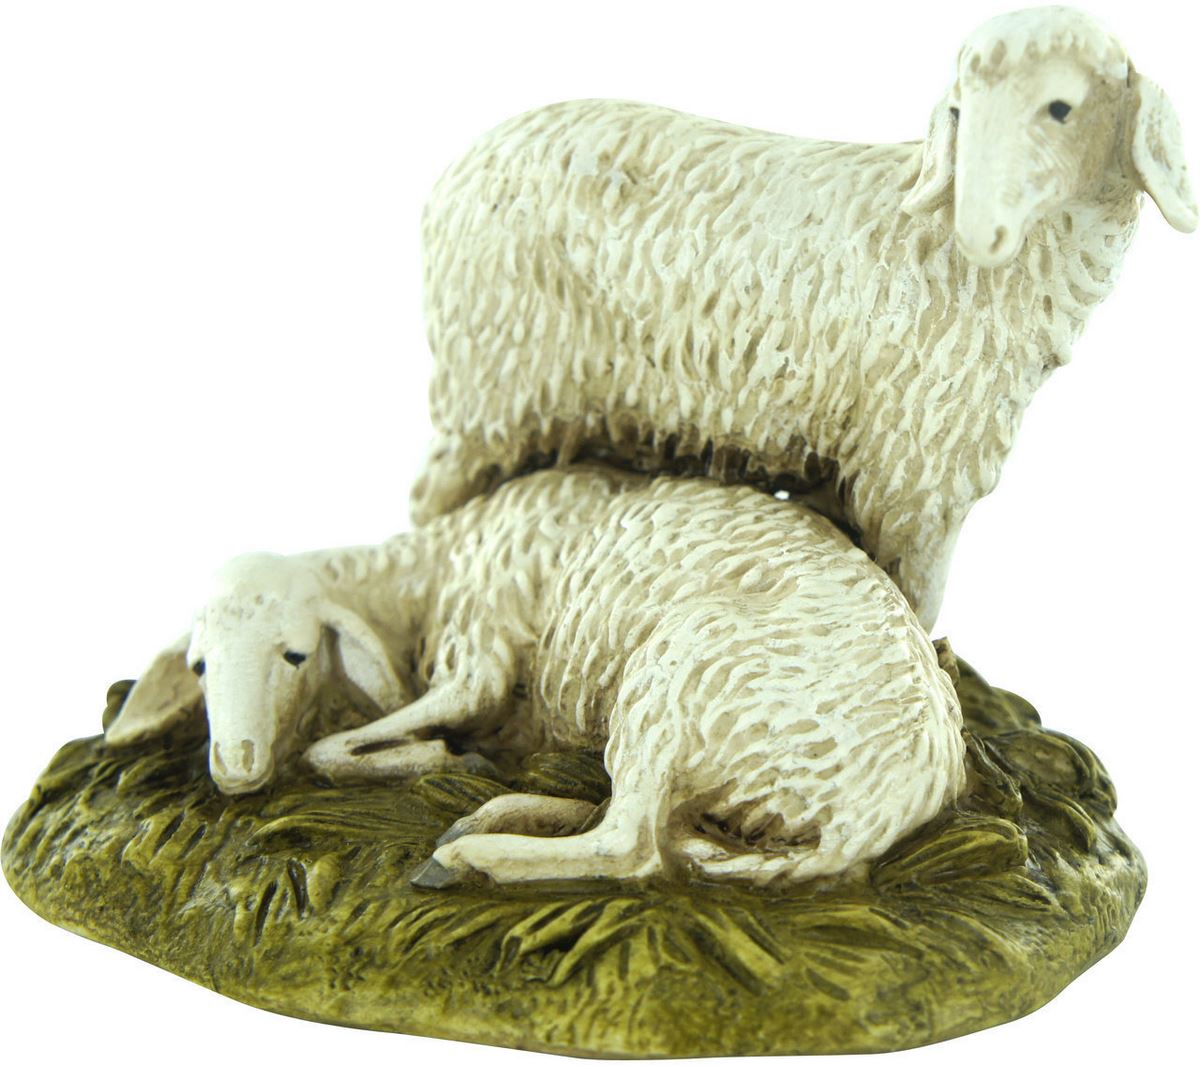 statuine presepe: gruppo di 2 pecore linea martino landi per presepe da cm 12